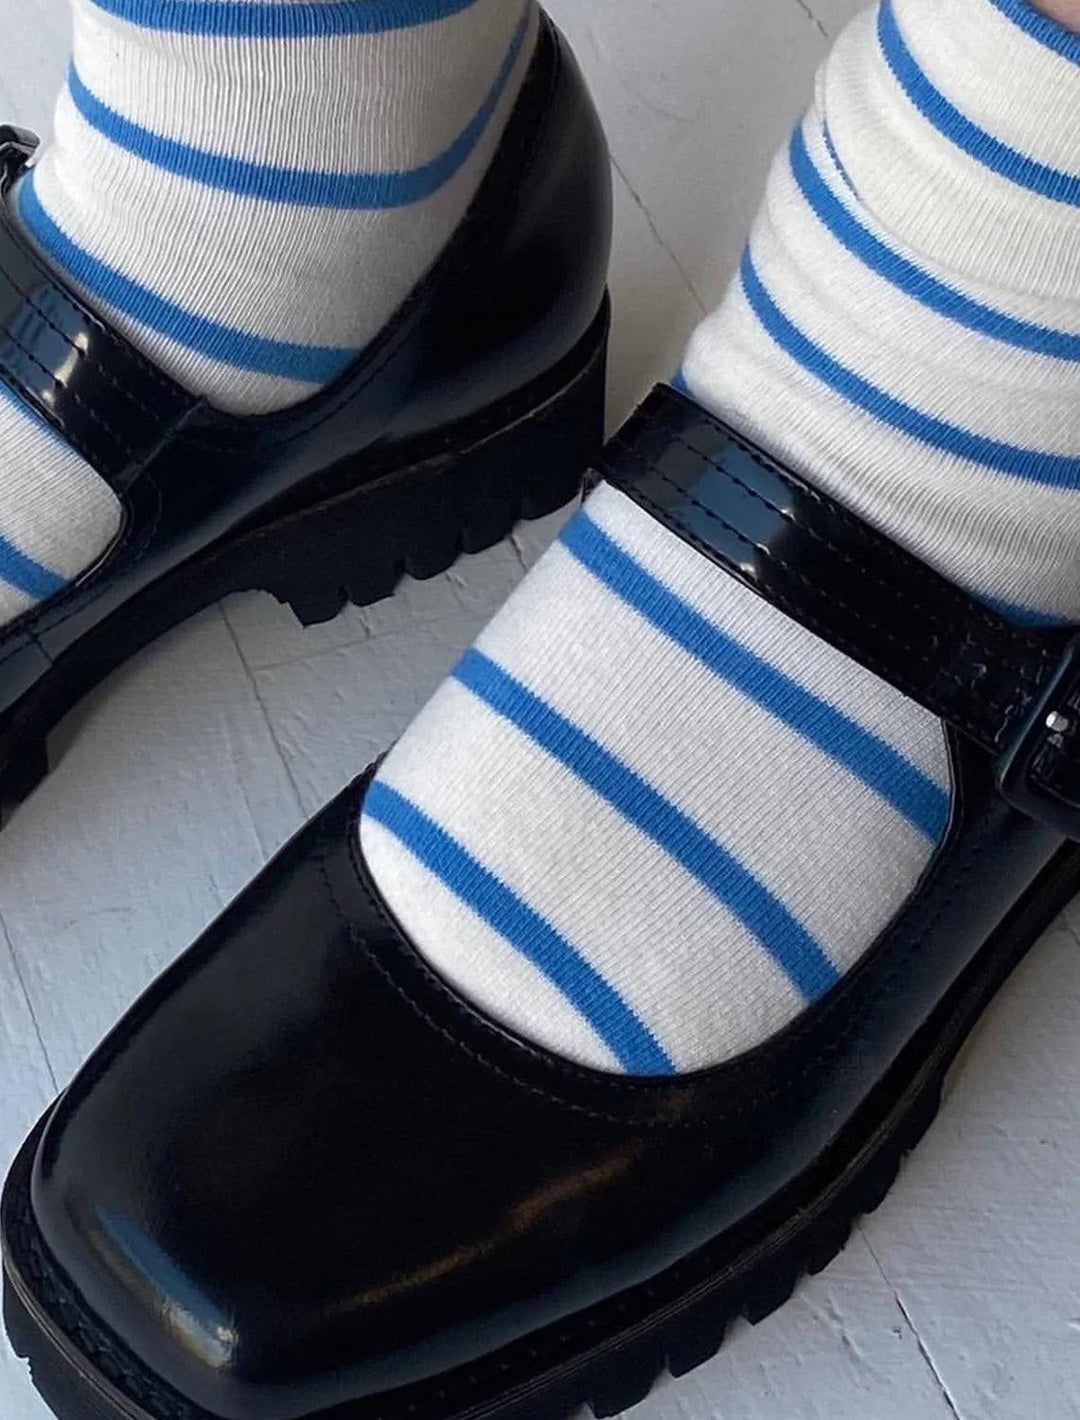 Le Bon Shoppe's wally socks in ciel blue